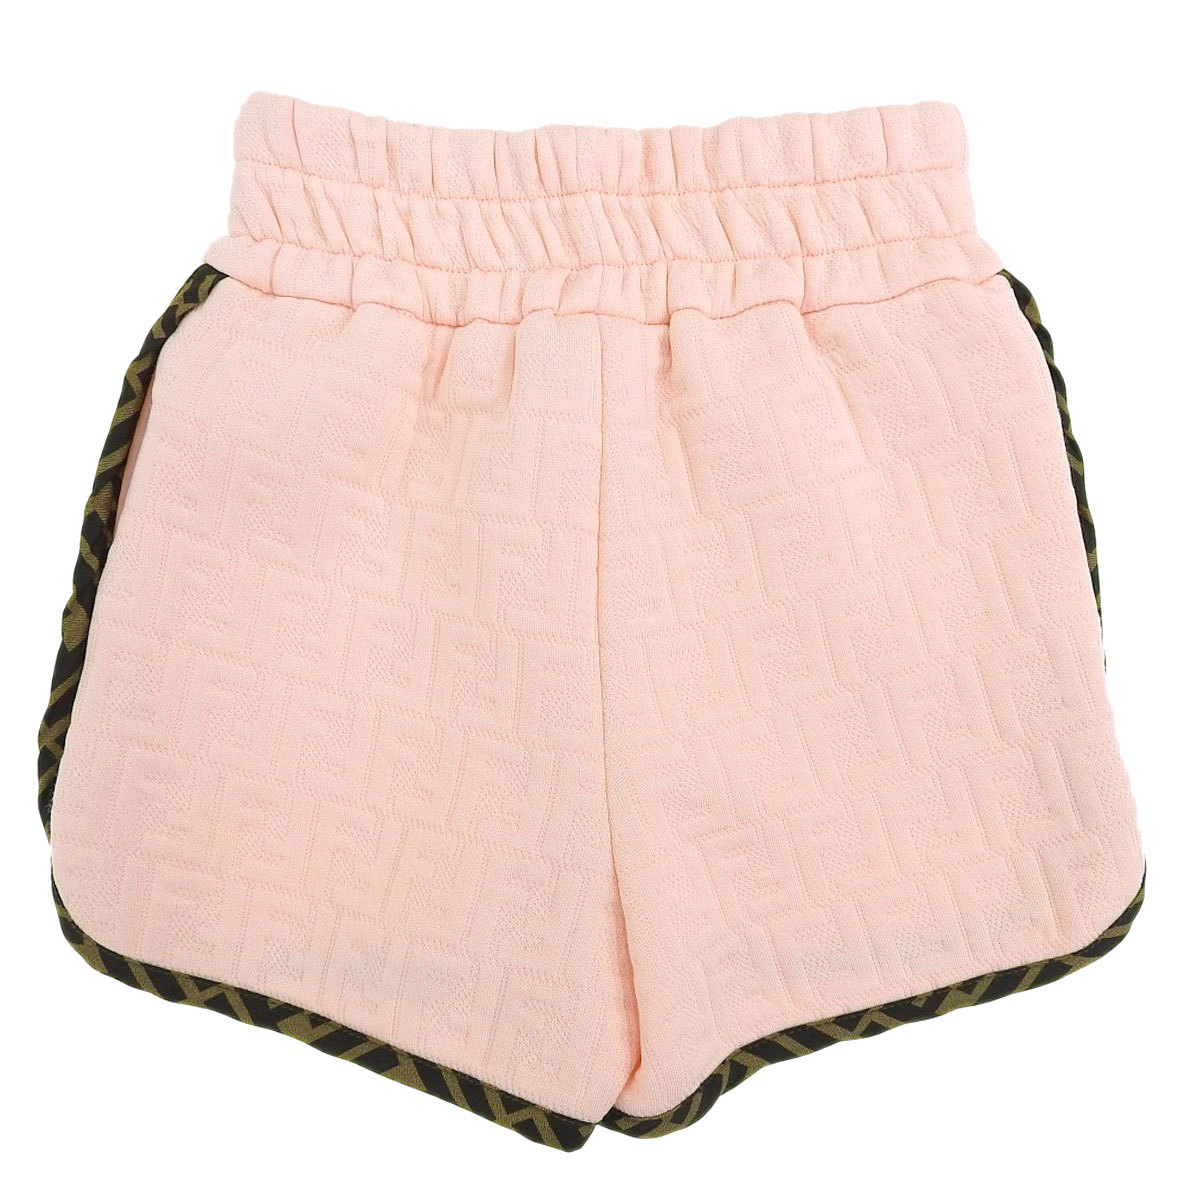  Fendi Kids FF рисунок шорты 61046300 женский розовый FENDI [ прекрасный товар ] б/у [ одежда * мелкие вещи ]